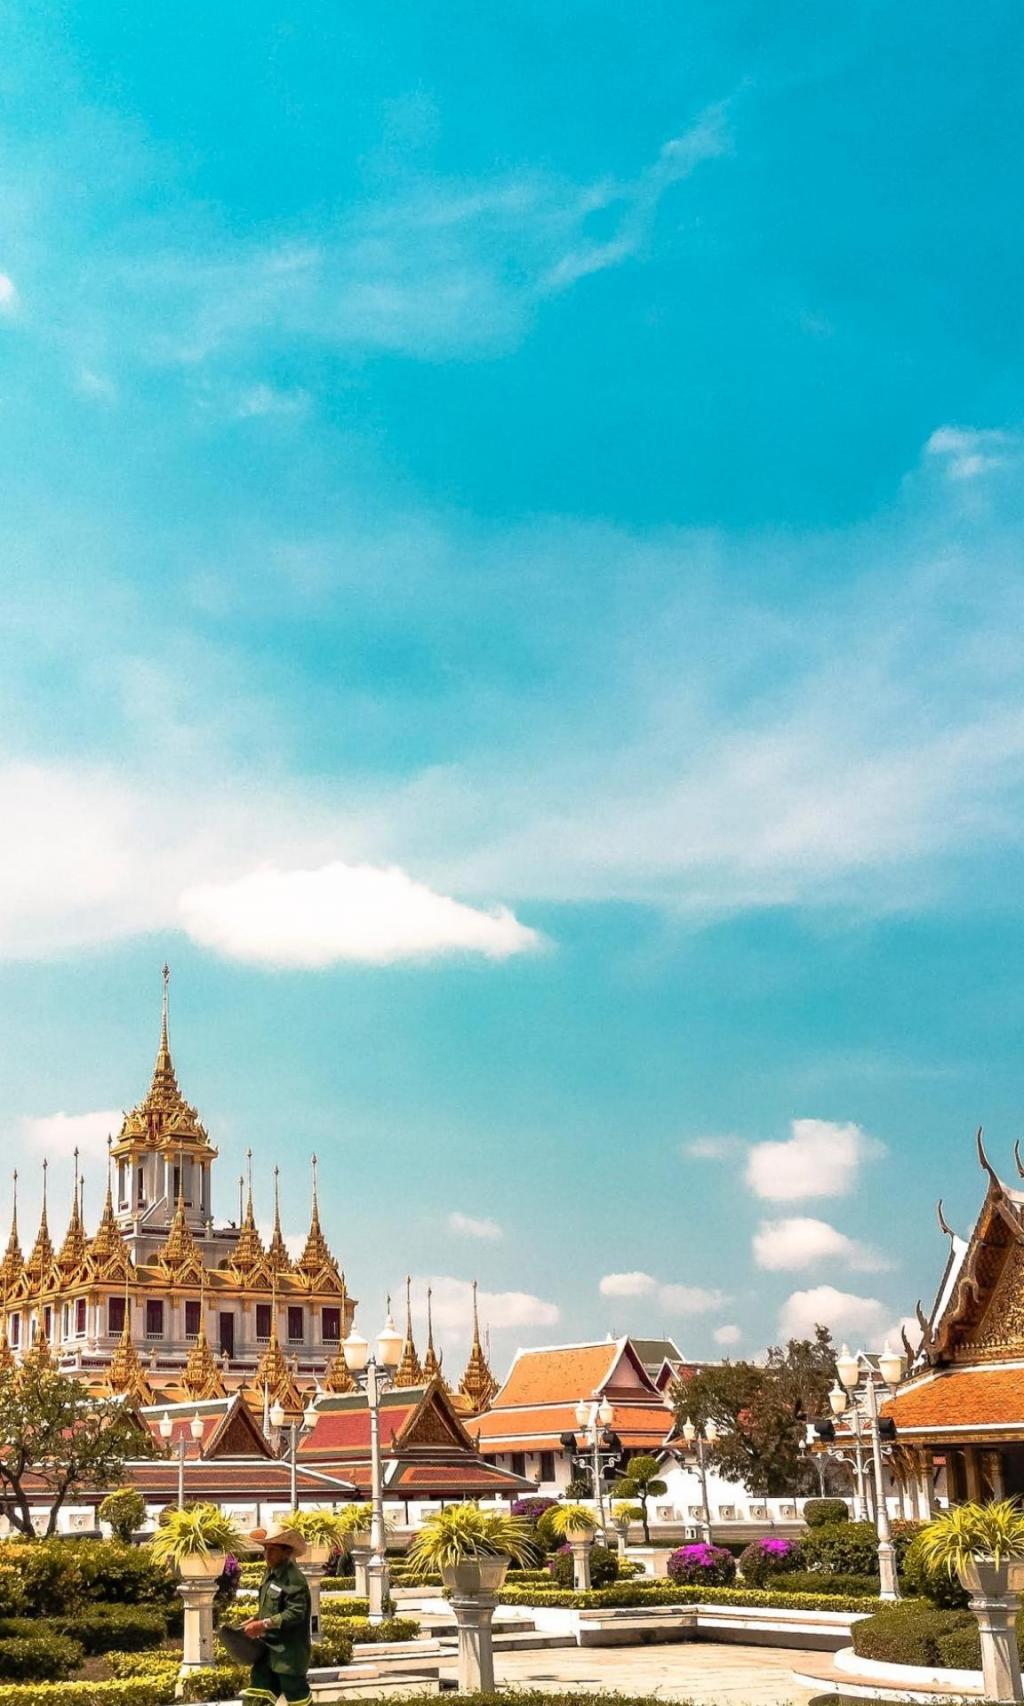 泰国著名建筑在明媚阳光下绝美风景手机壁纸